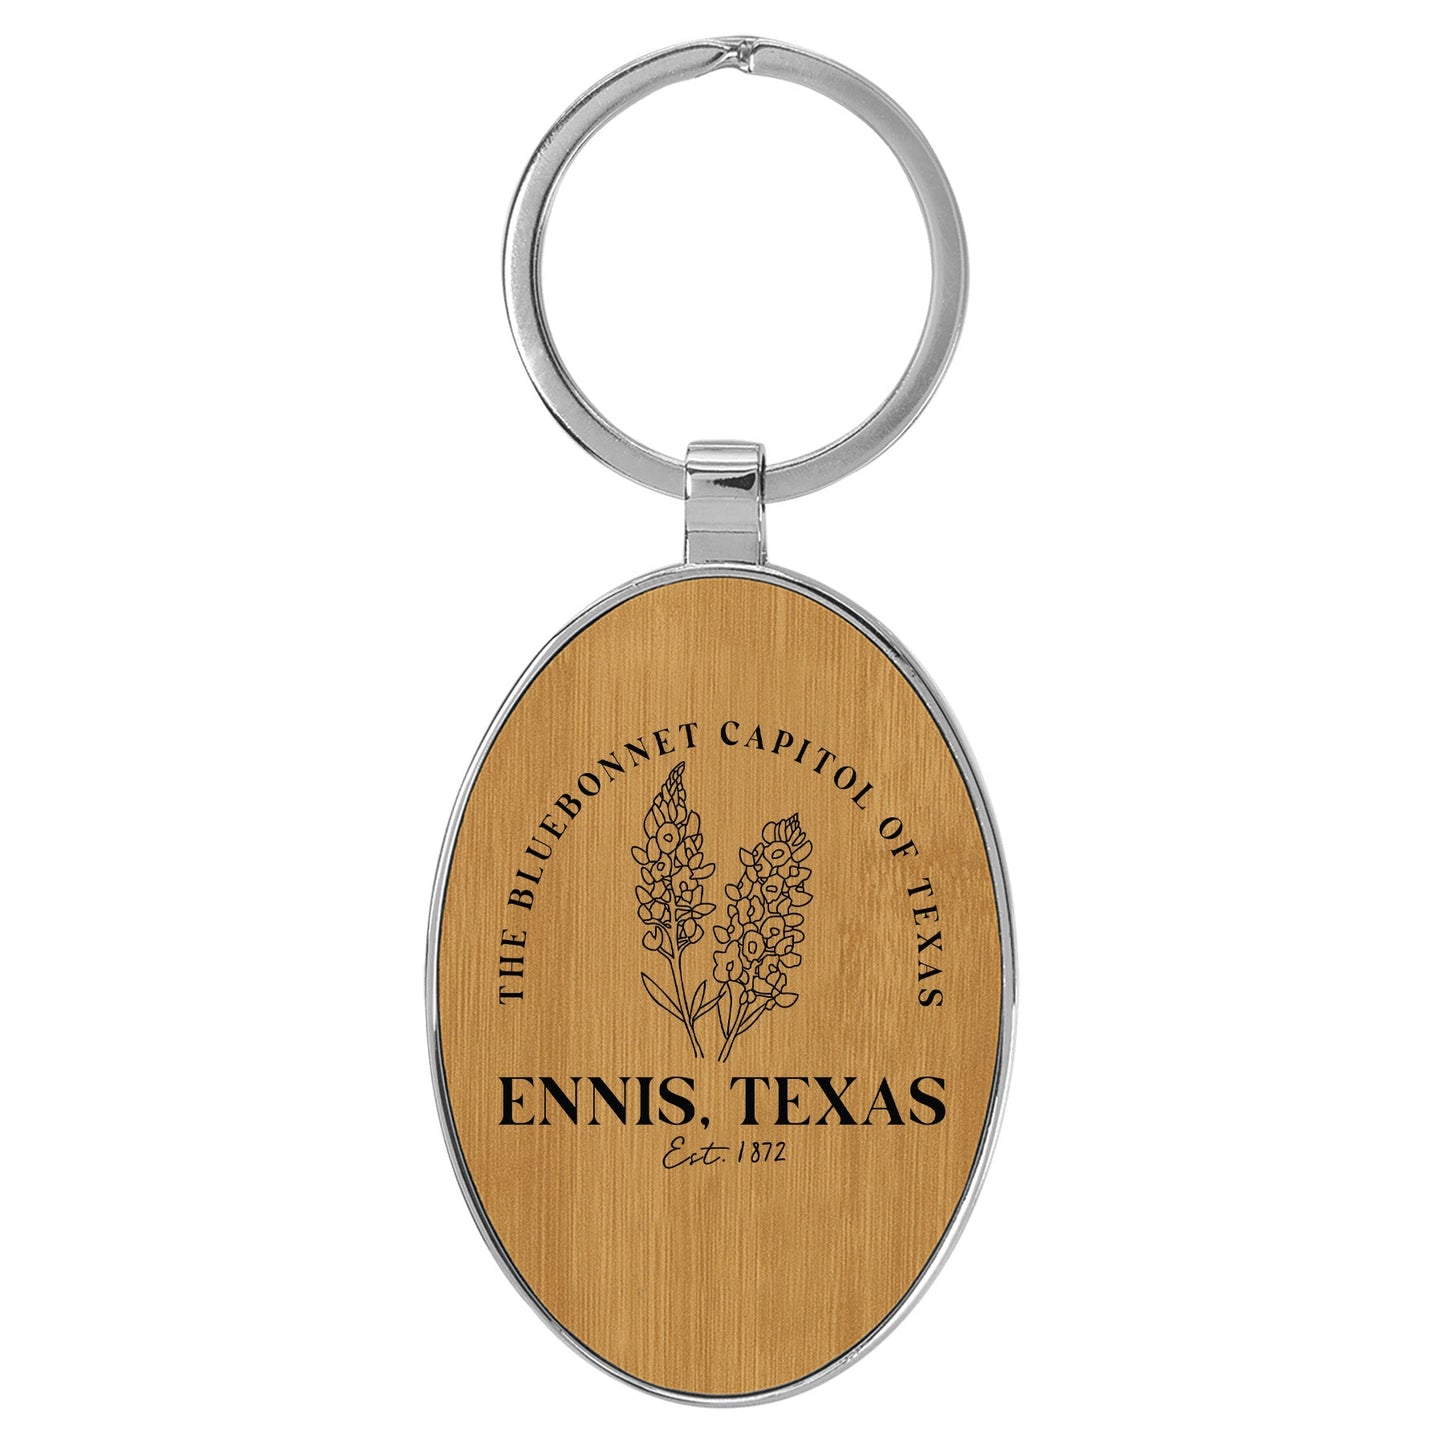 Ennis Texas Key Tag